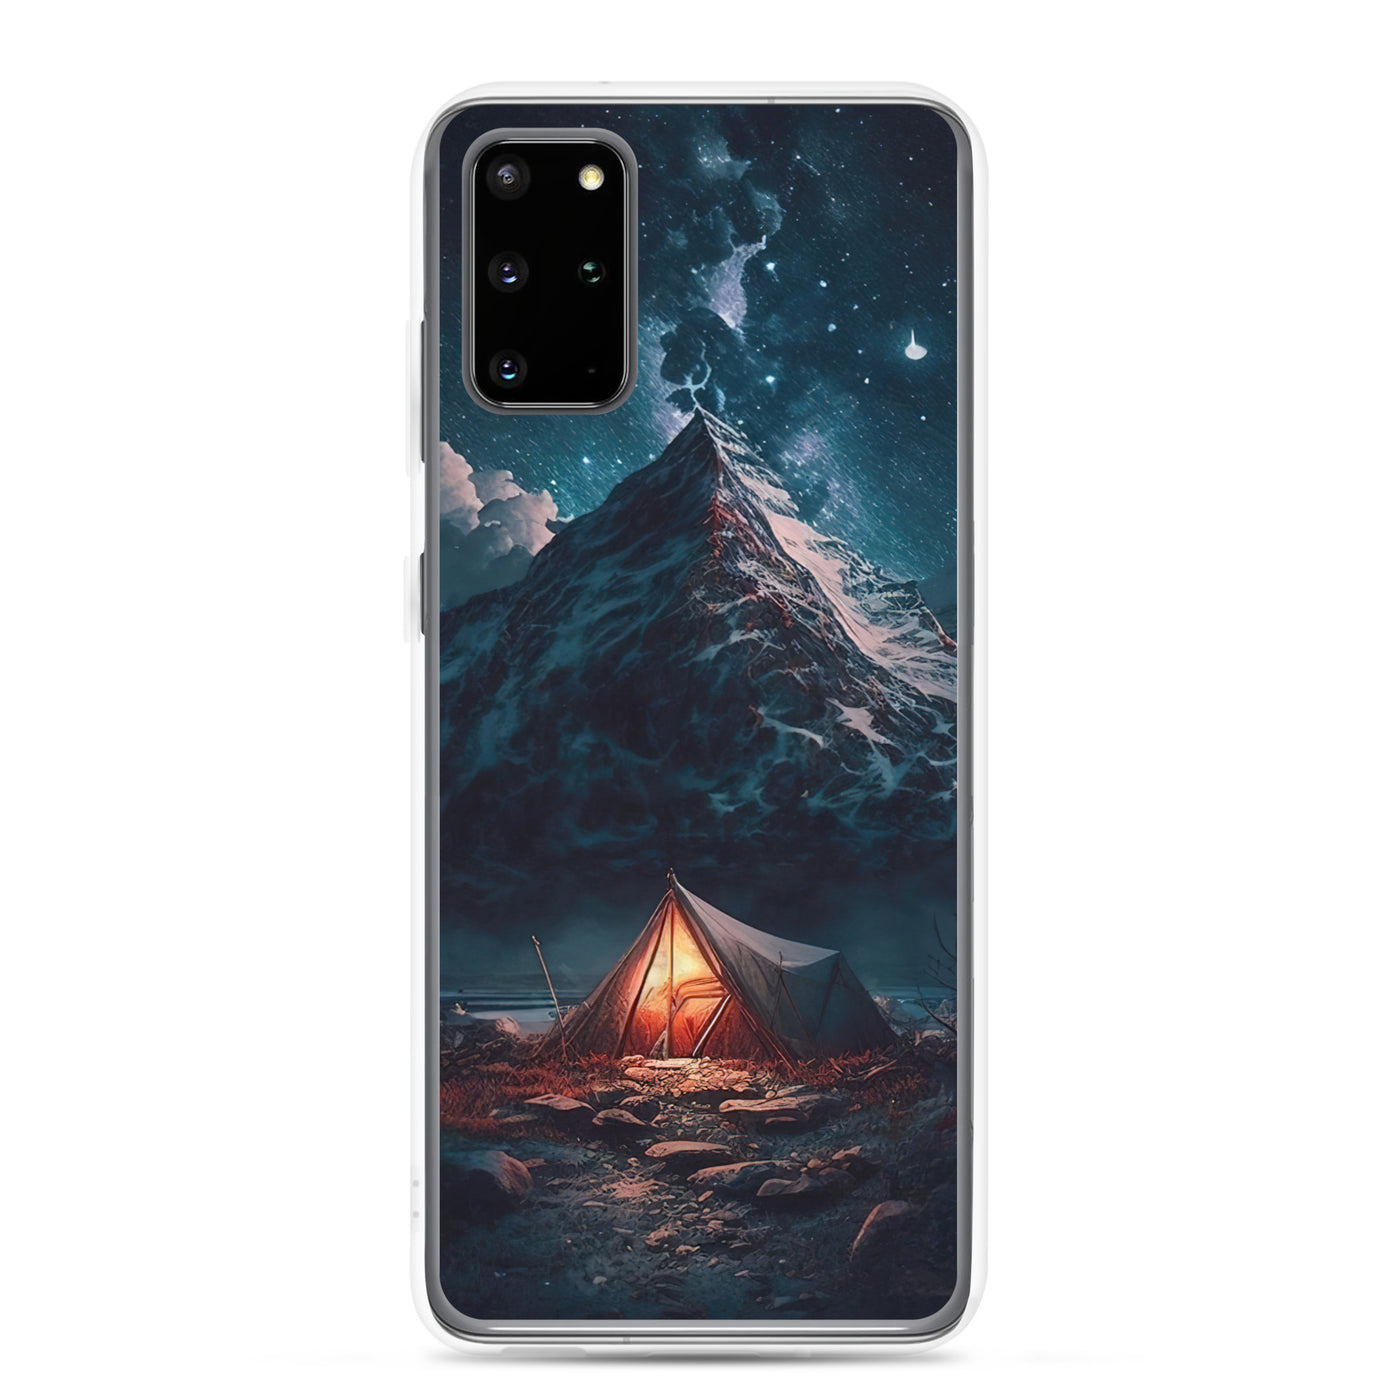 Zelt und Berg in der Nacht - Sterne am Himmel - Landschaftsmalerei - Samsung Schutzhülle (durchsichtig) camping xxx Samsung Galaxy S20 Plus